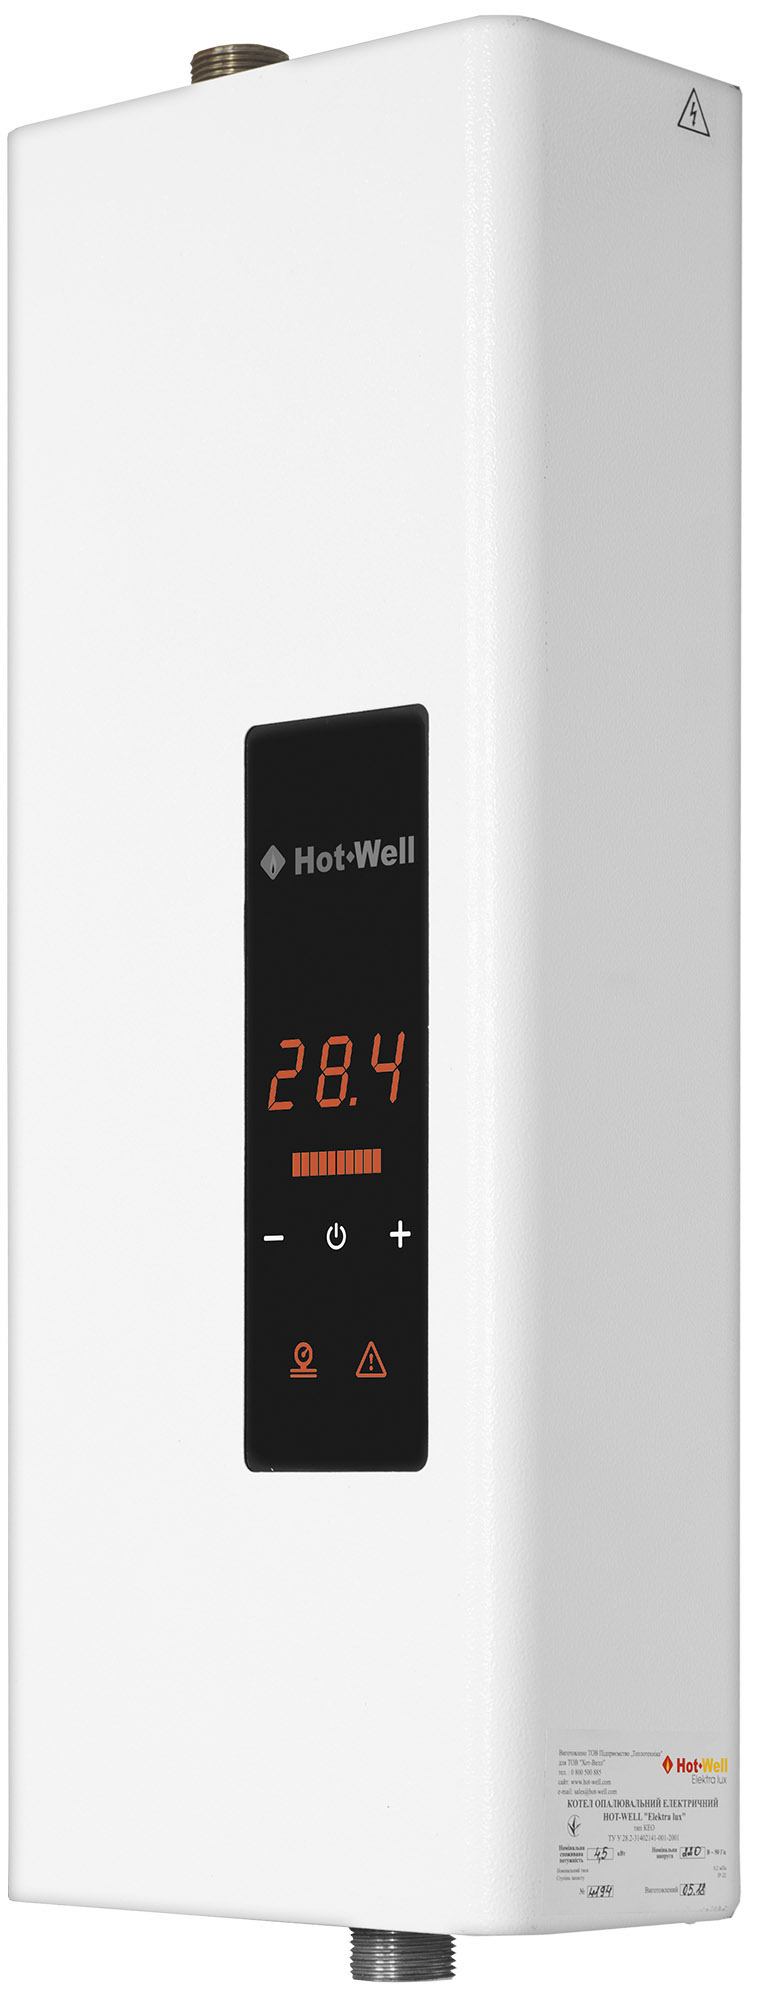 Котел Hot-Well електричний Hot-Well Elektra LUX S 4,5/220 без насоса